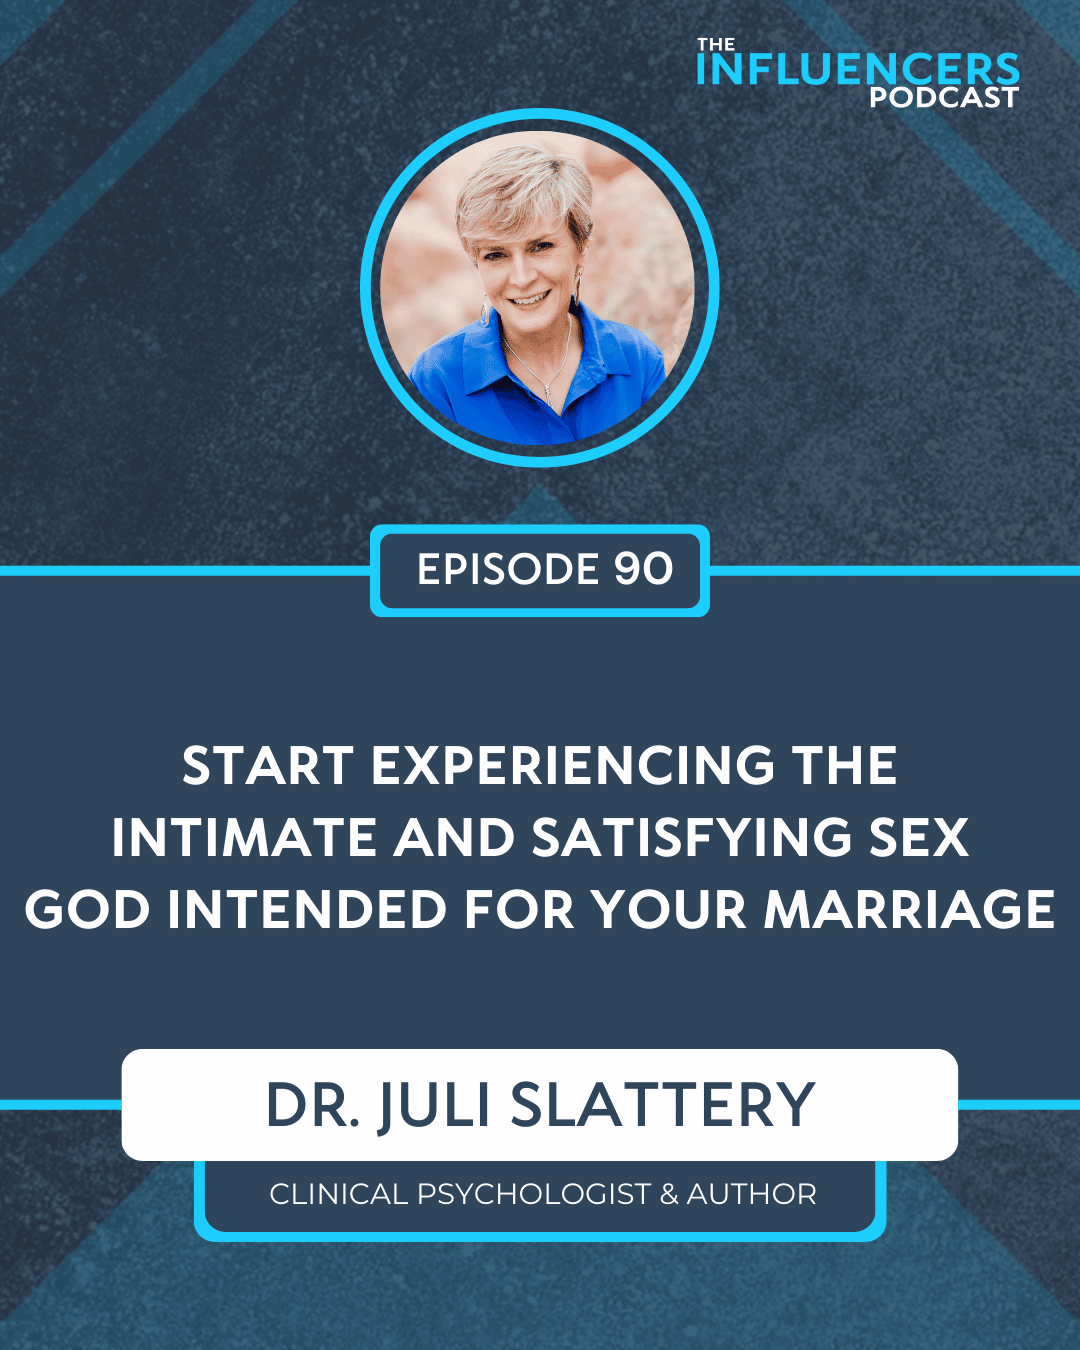 Episode 90 with Dr. Juli Slattery.